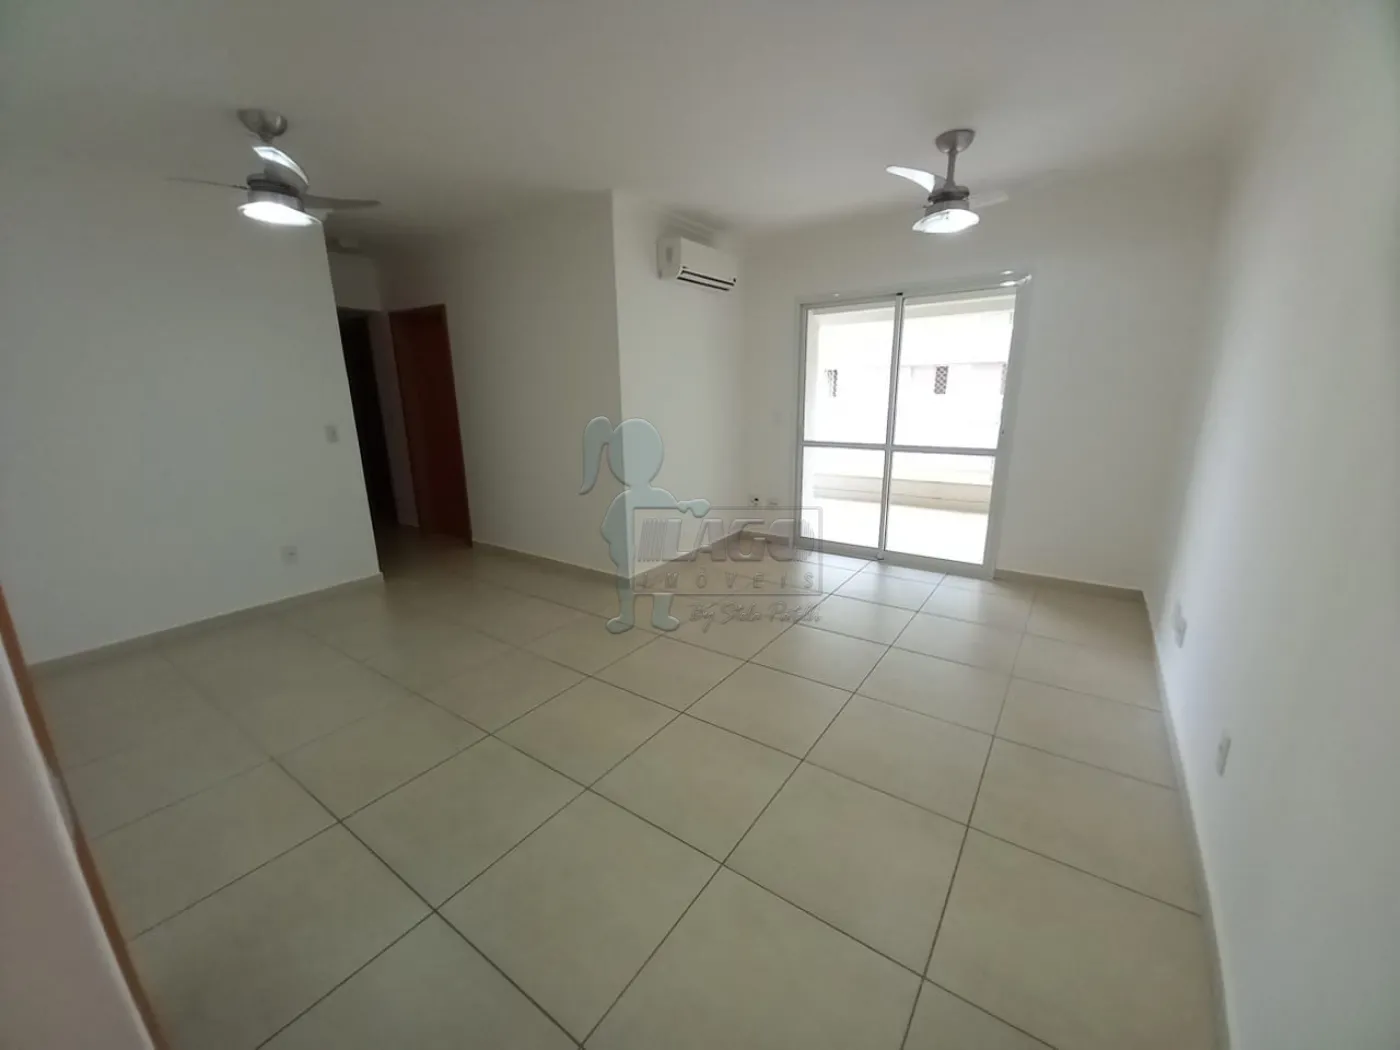 Alugar Apartamentos / Padrão em Ribeirão Preto R$ 2.900,00 - Foto 1